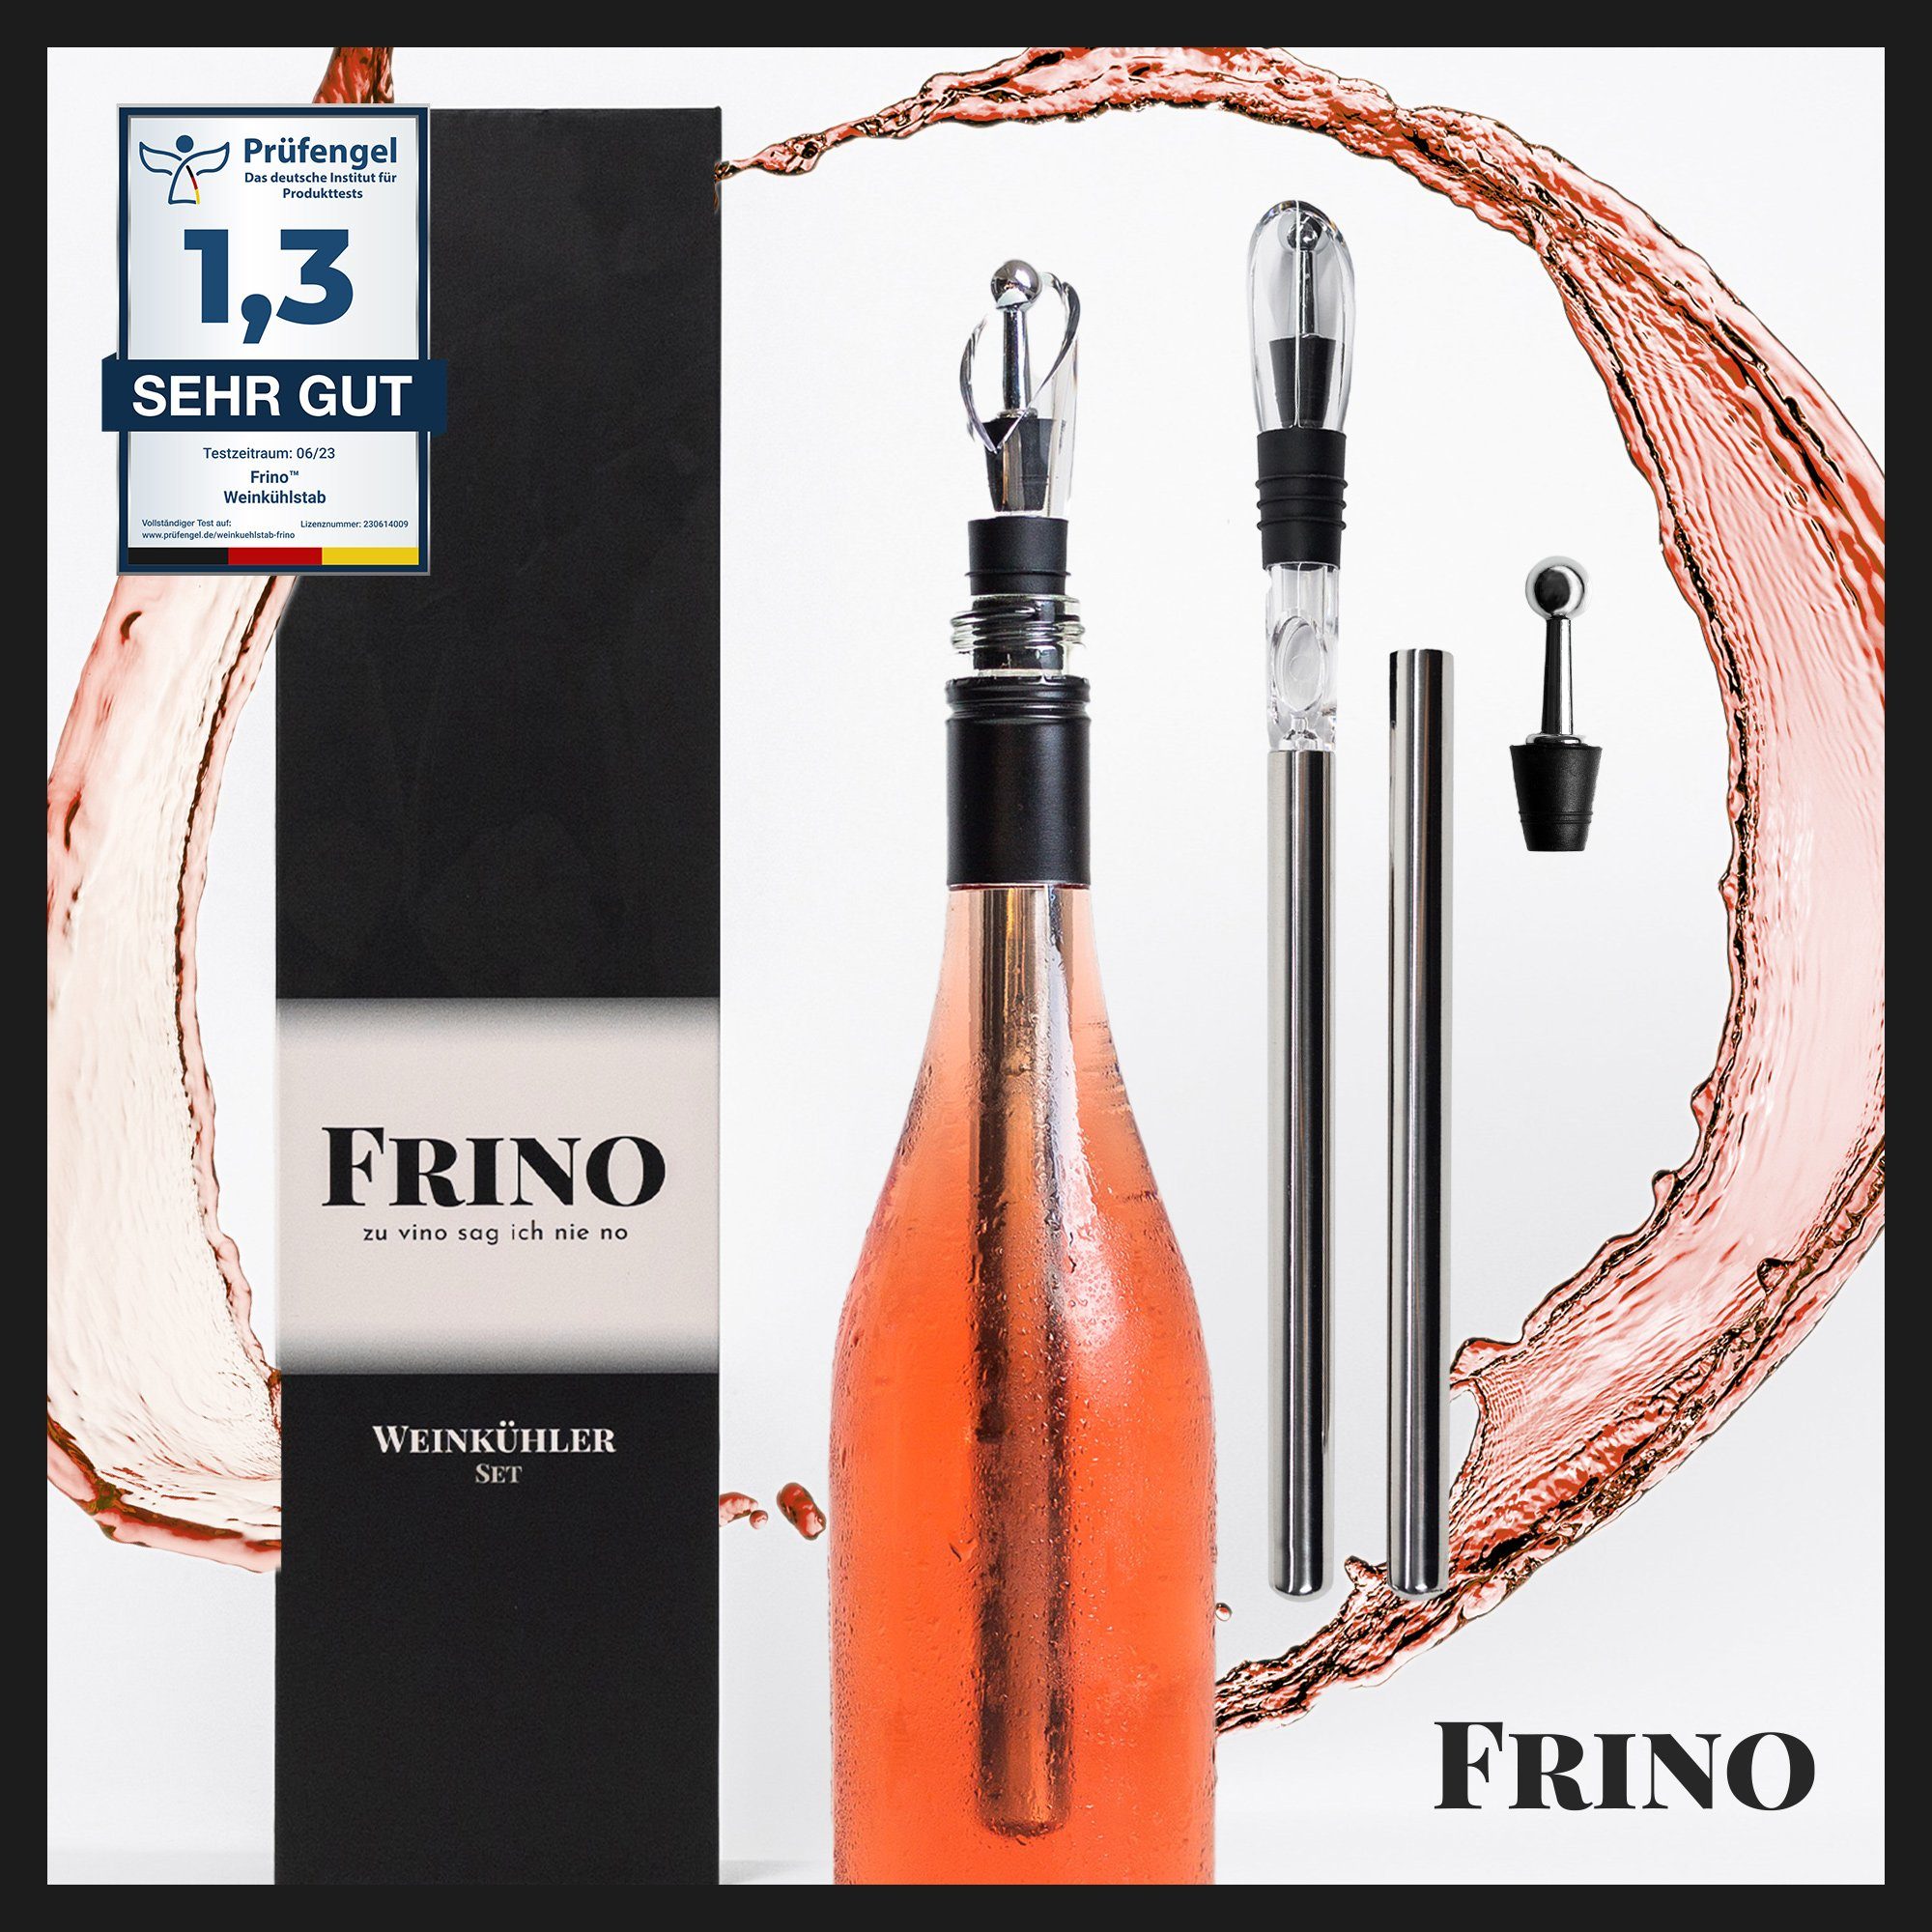 FRINO Wein- und Sektkühler FRINO™ Weinkühlstab Set [2 GRÖSSEN] Premium Weinkühler mit Ausgießer, Geschenkidee